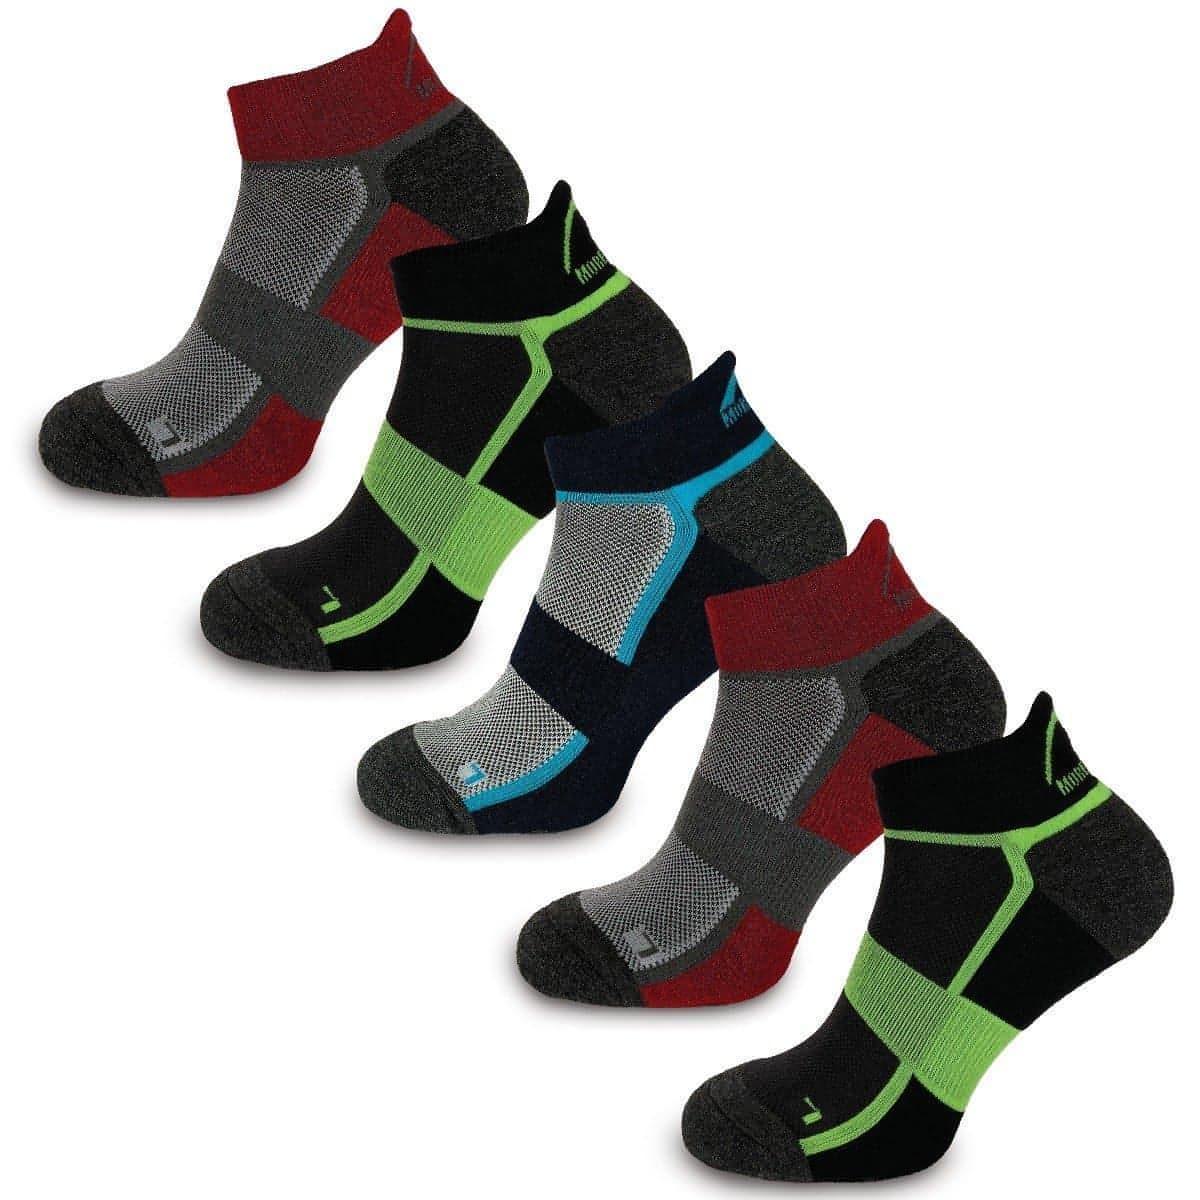 More Mile Bamboo Comfort (5 Pack) Running Socks - Multi – Start Fitness